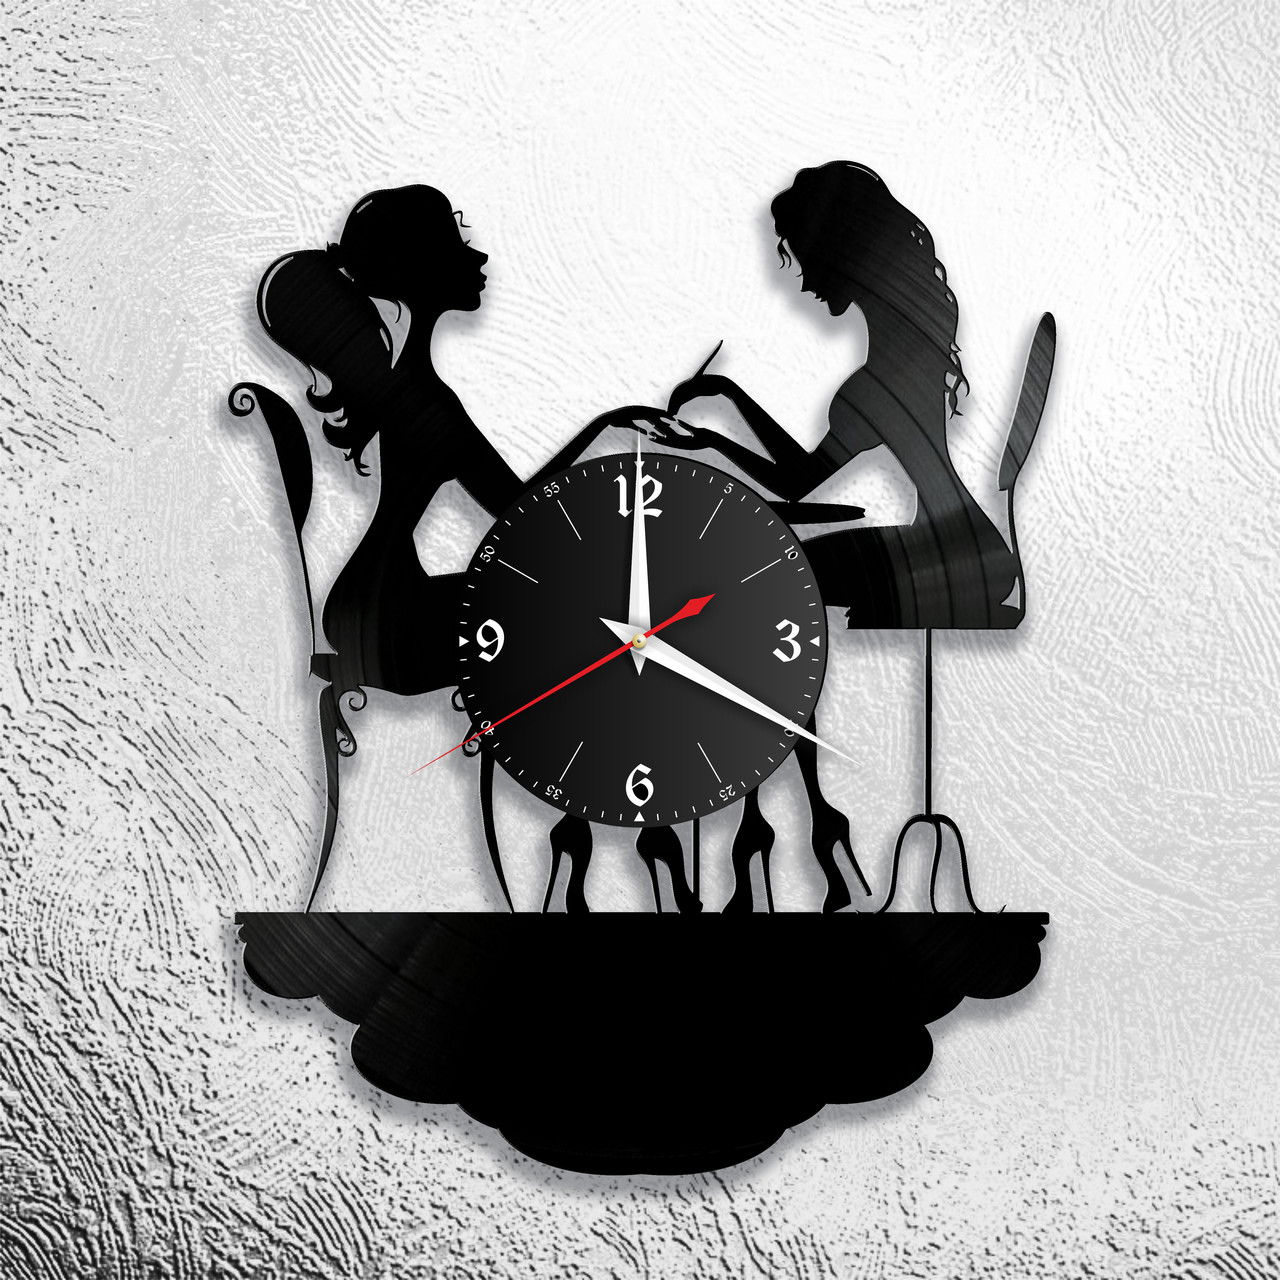 Оригинальные часы из виниловых пластинок "2 девушки" версия 2